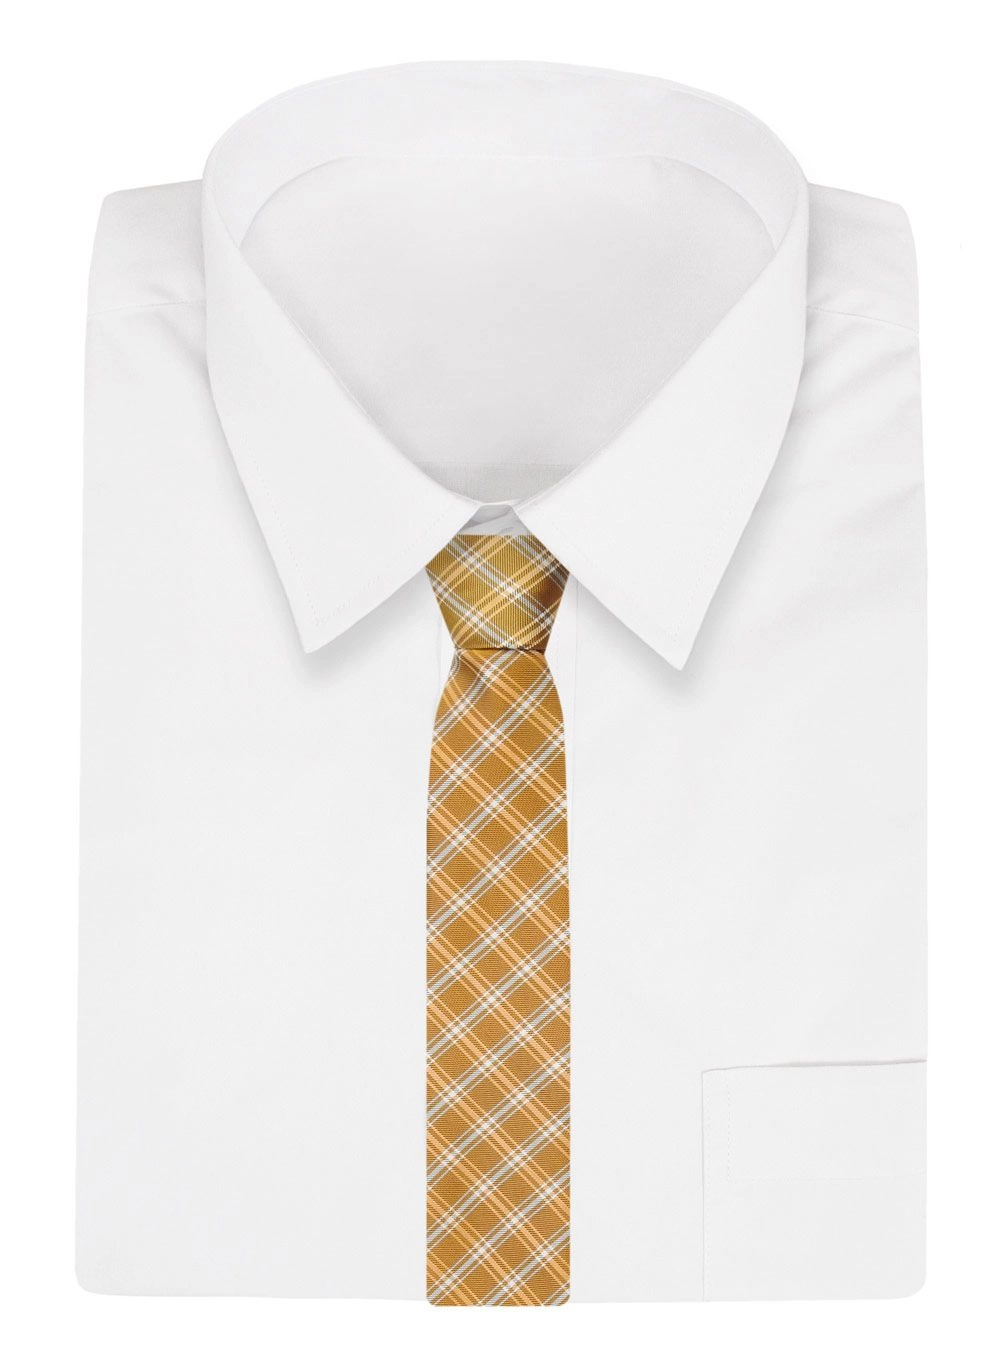 Krawat Żółty w Kratkę, Elegancki, 7cm, Klasyczny, Męski -ALTIES